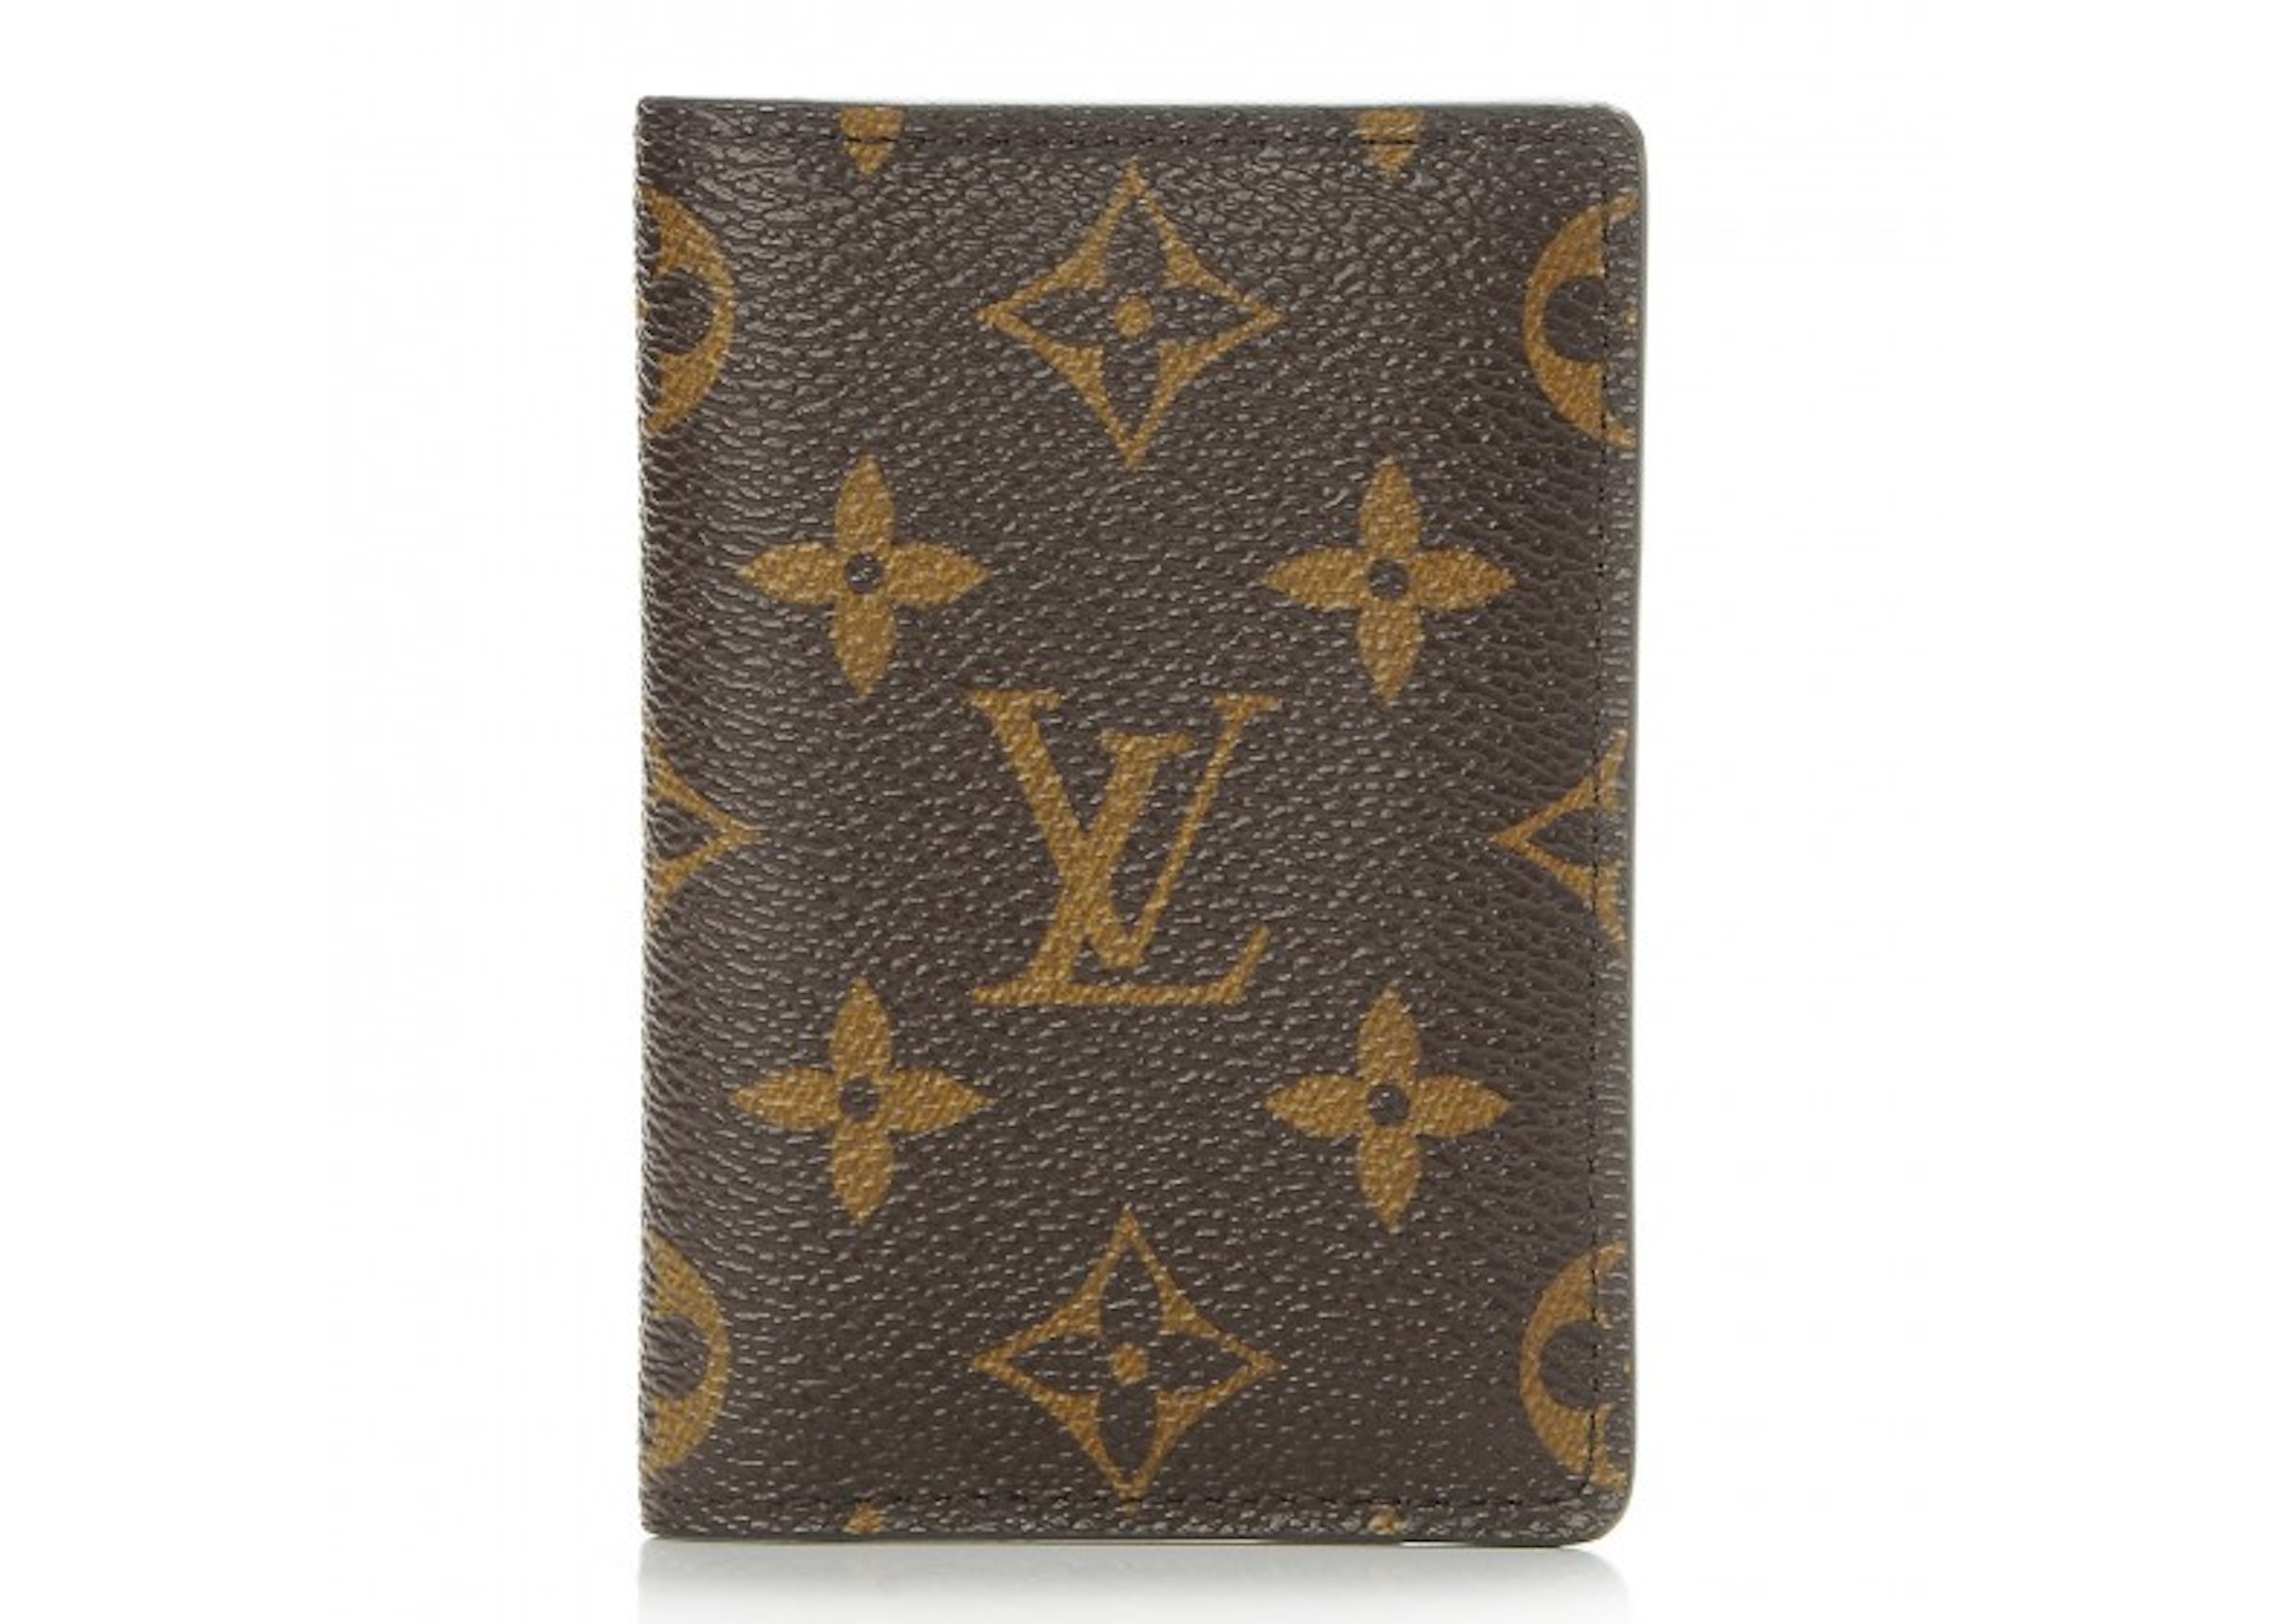 Louis Vuitton Pocket Organizer Monogram Brown in Canvas - US